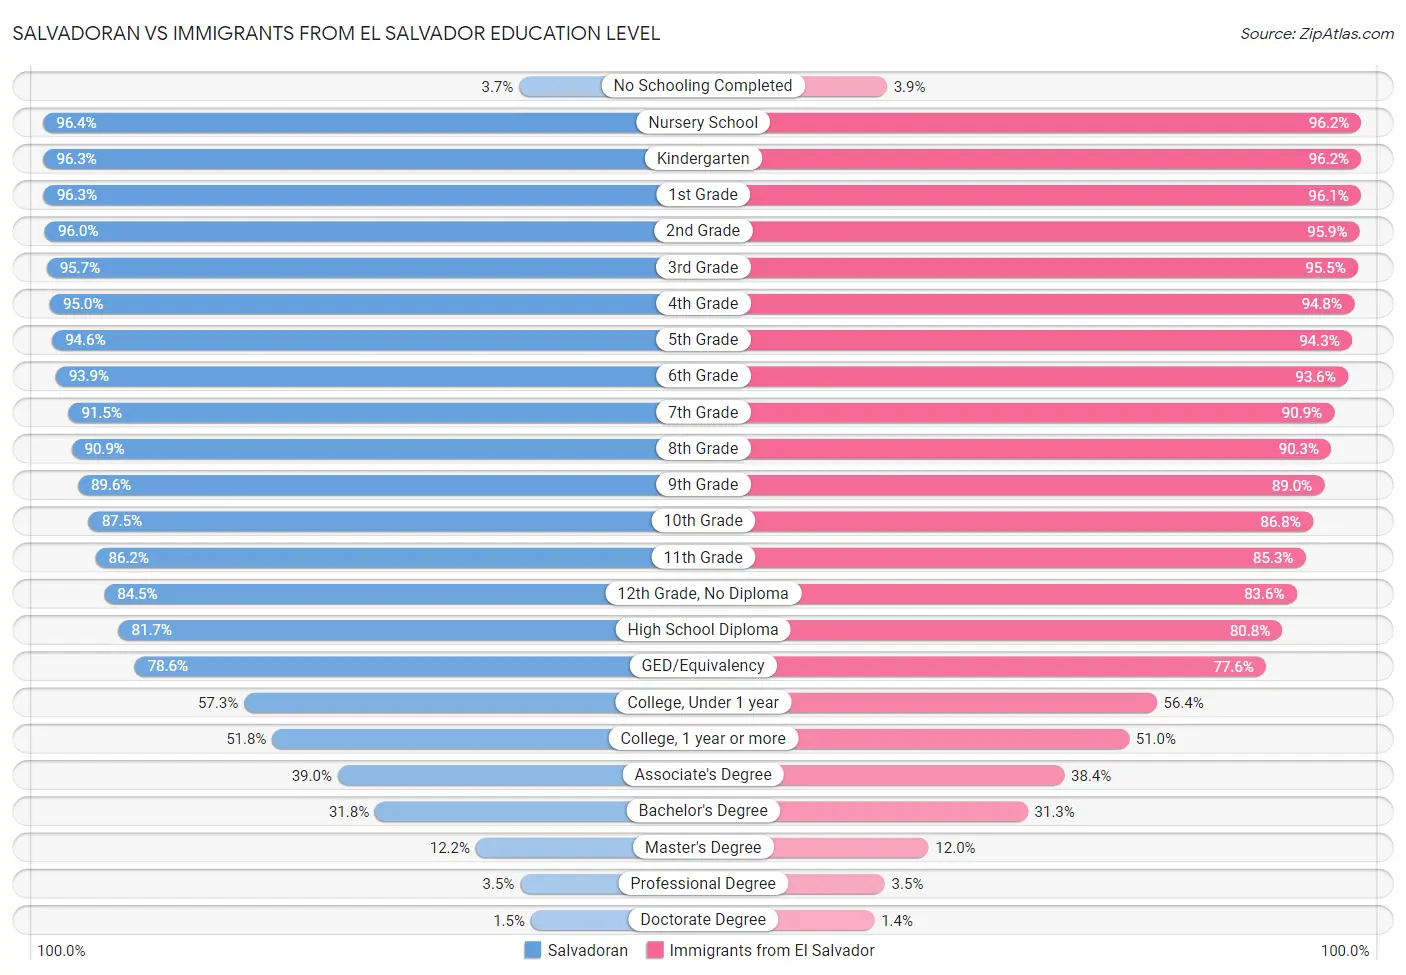 Salvadoran vs Immigrants from El Salvador Education Level